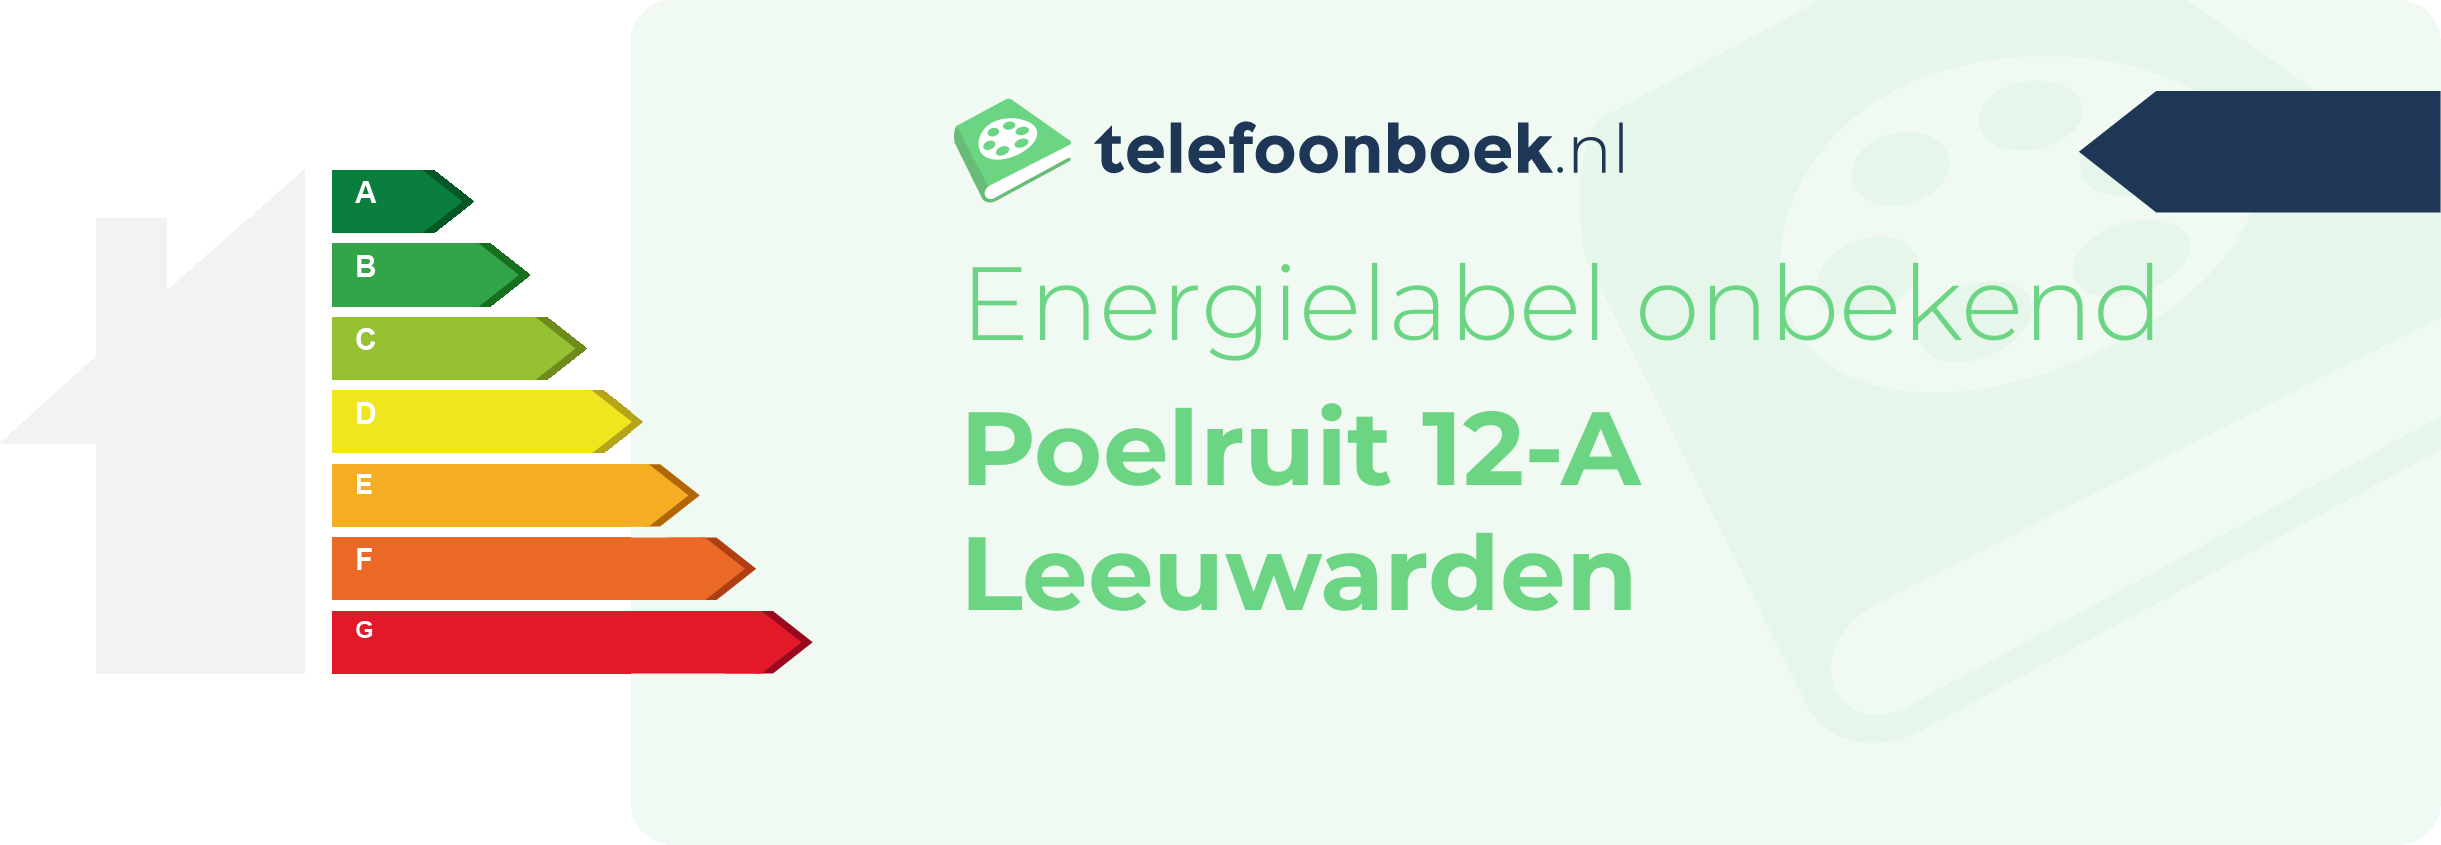 Energielabel Poelruit 12-A Leeuwarden